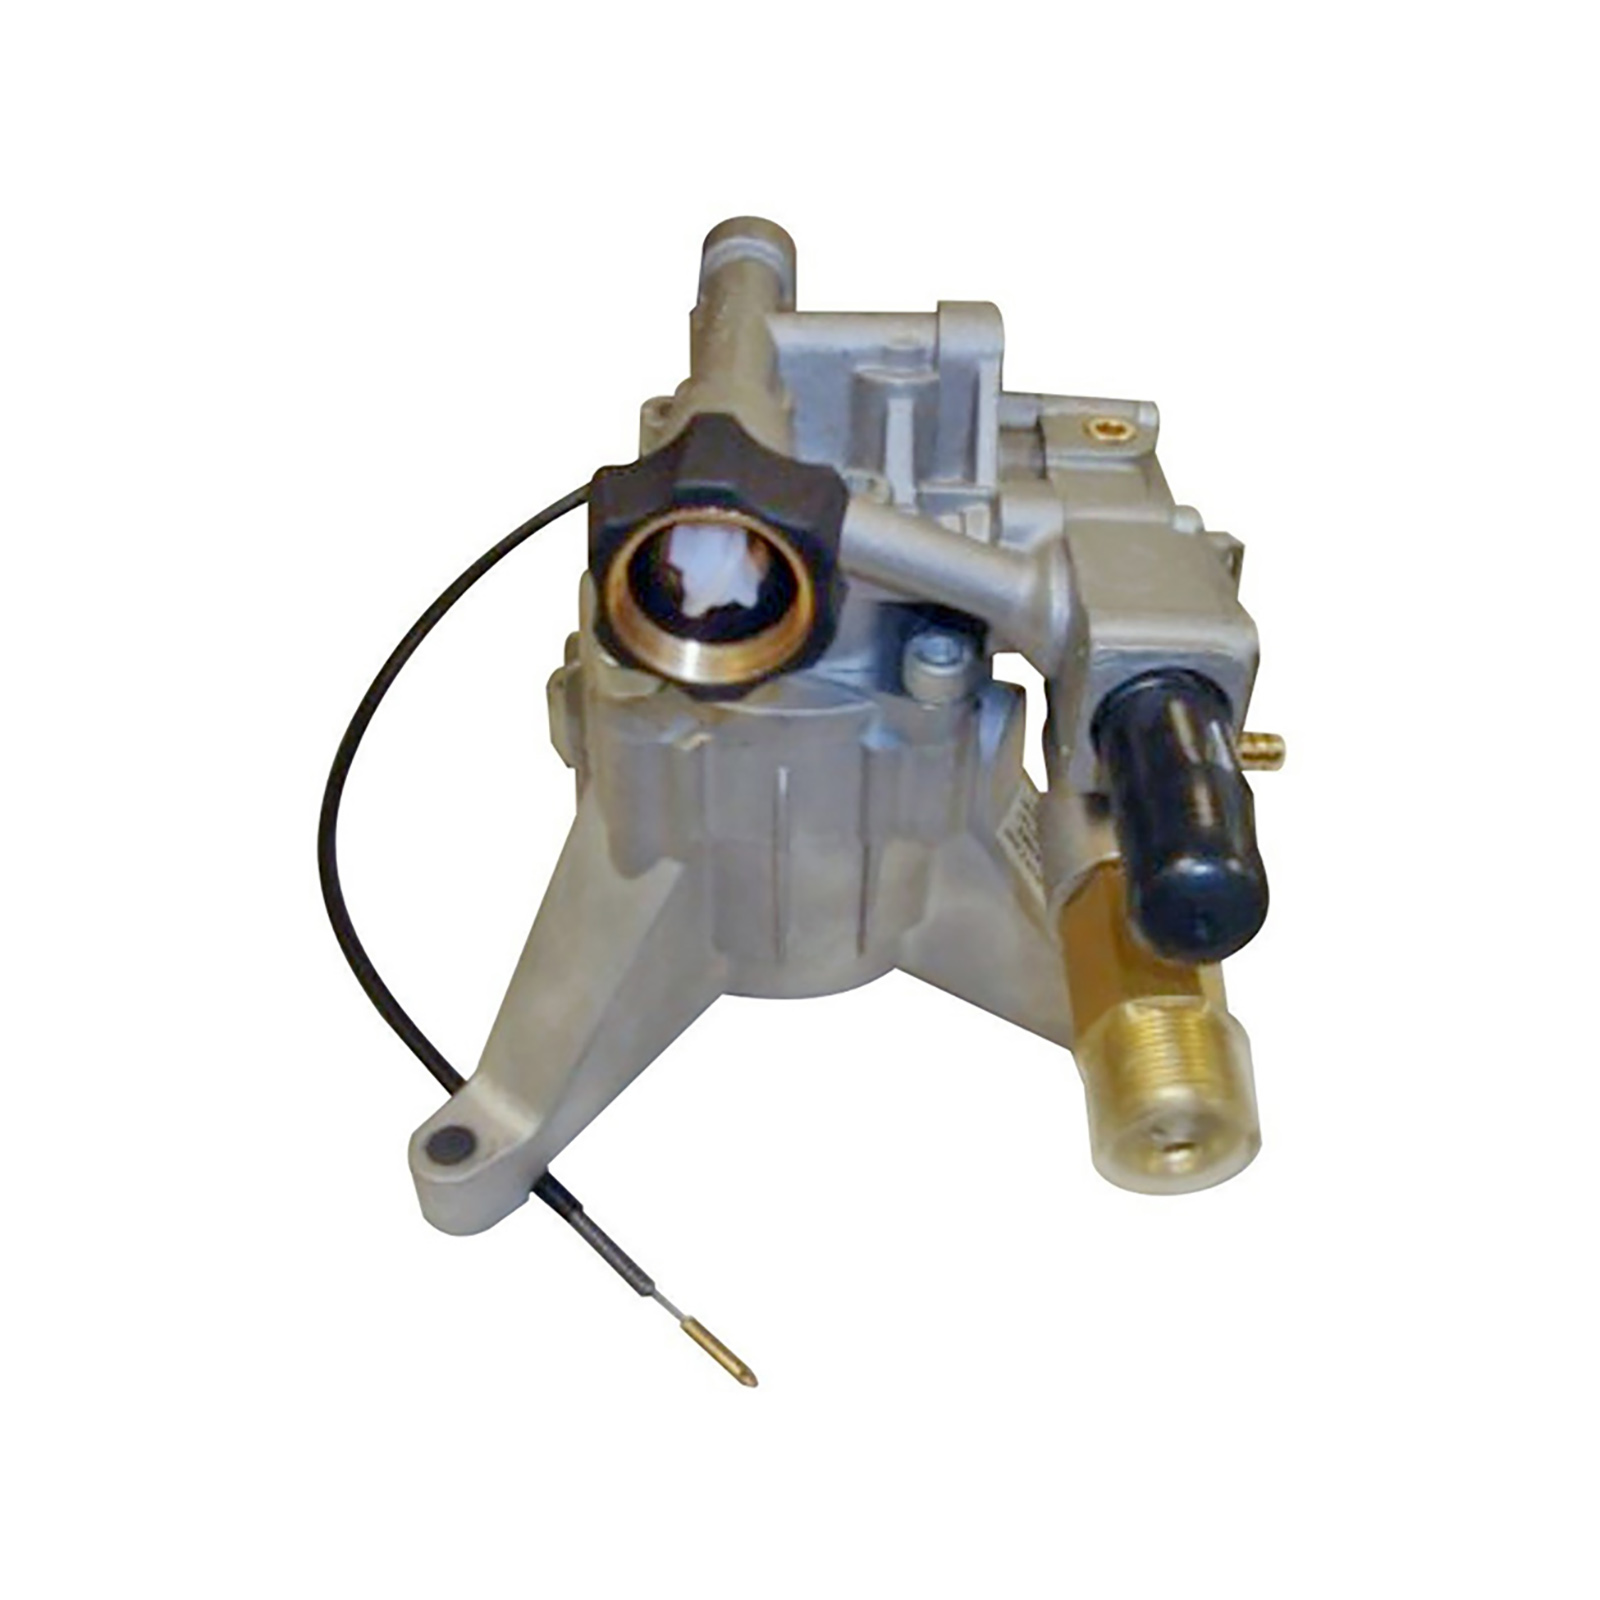 Ryobi RY80940 Pressure Washer Replacement Pump # 308653054